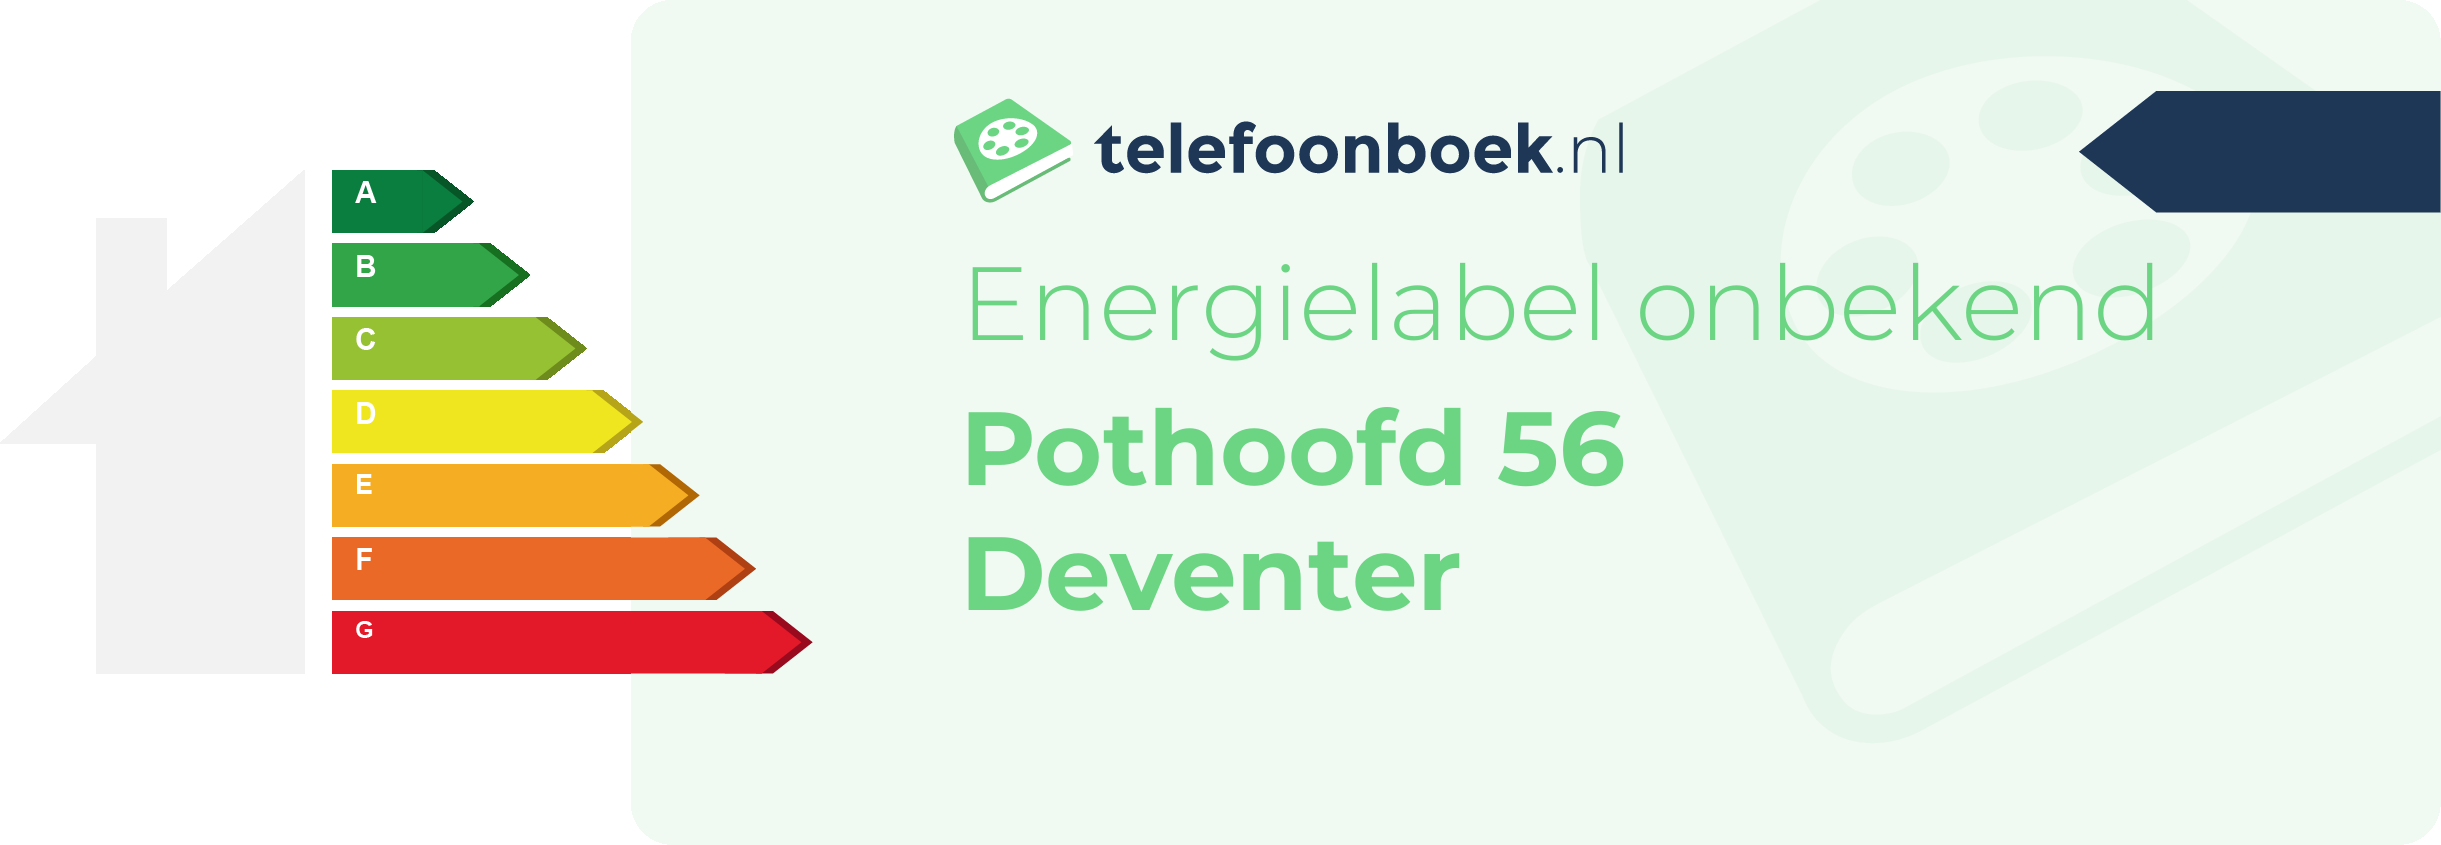 Energielabel Pothoofd 56 Deventer